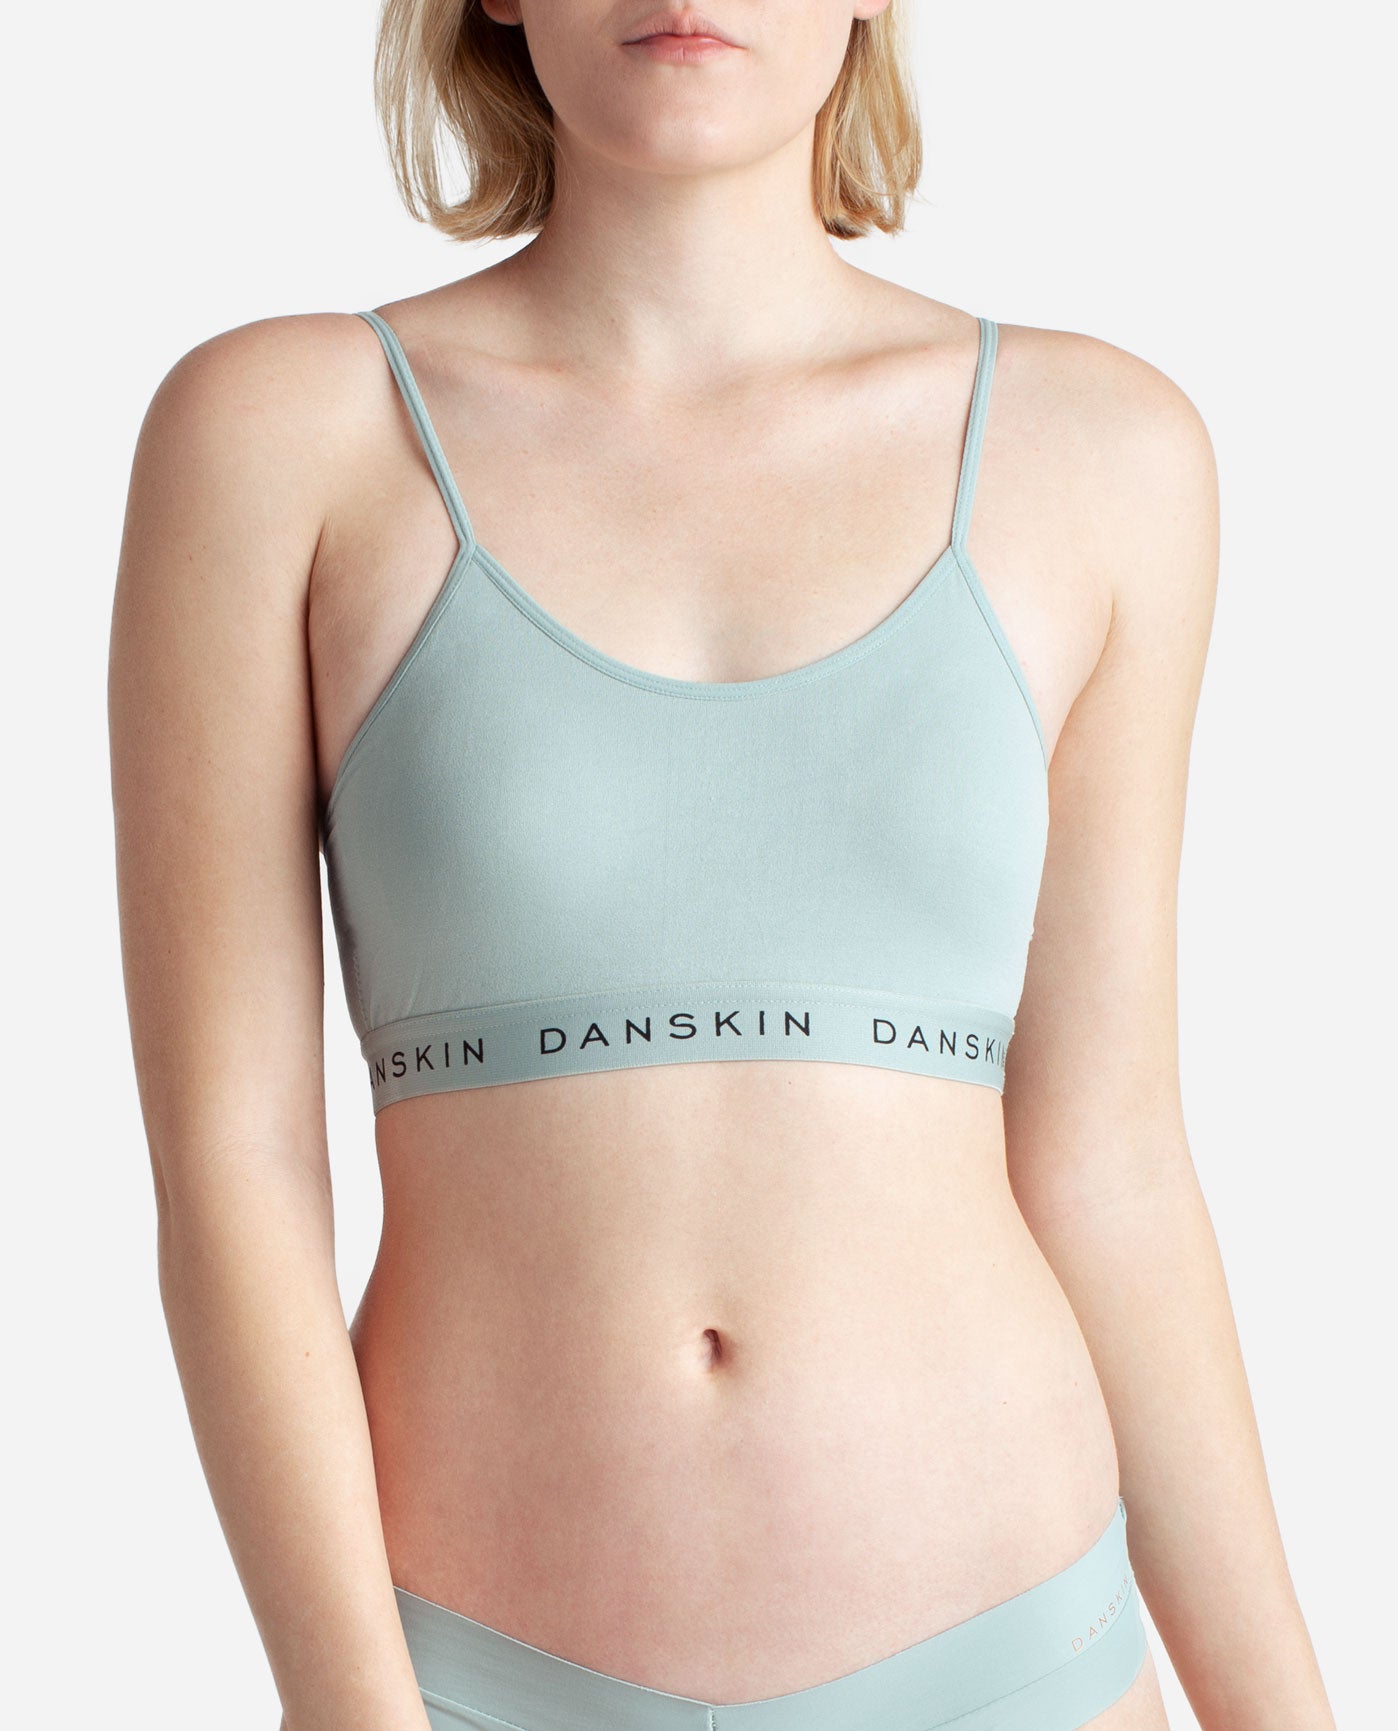 Danskin Lounge Bras, Bralettes & Underwear for Women